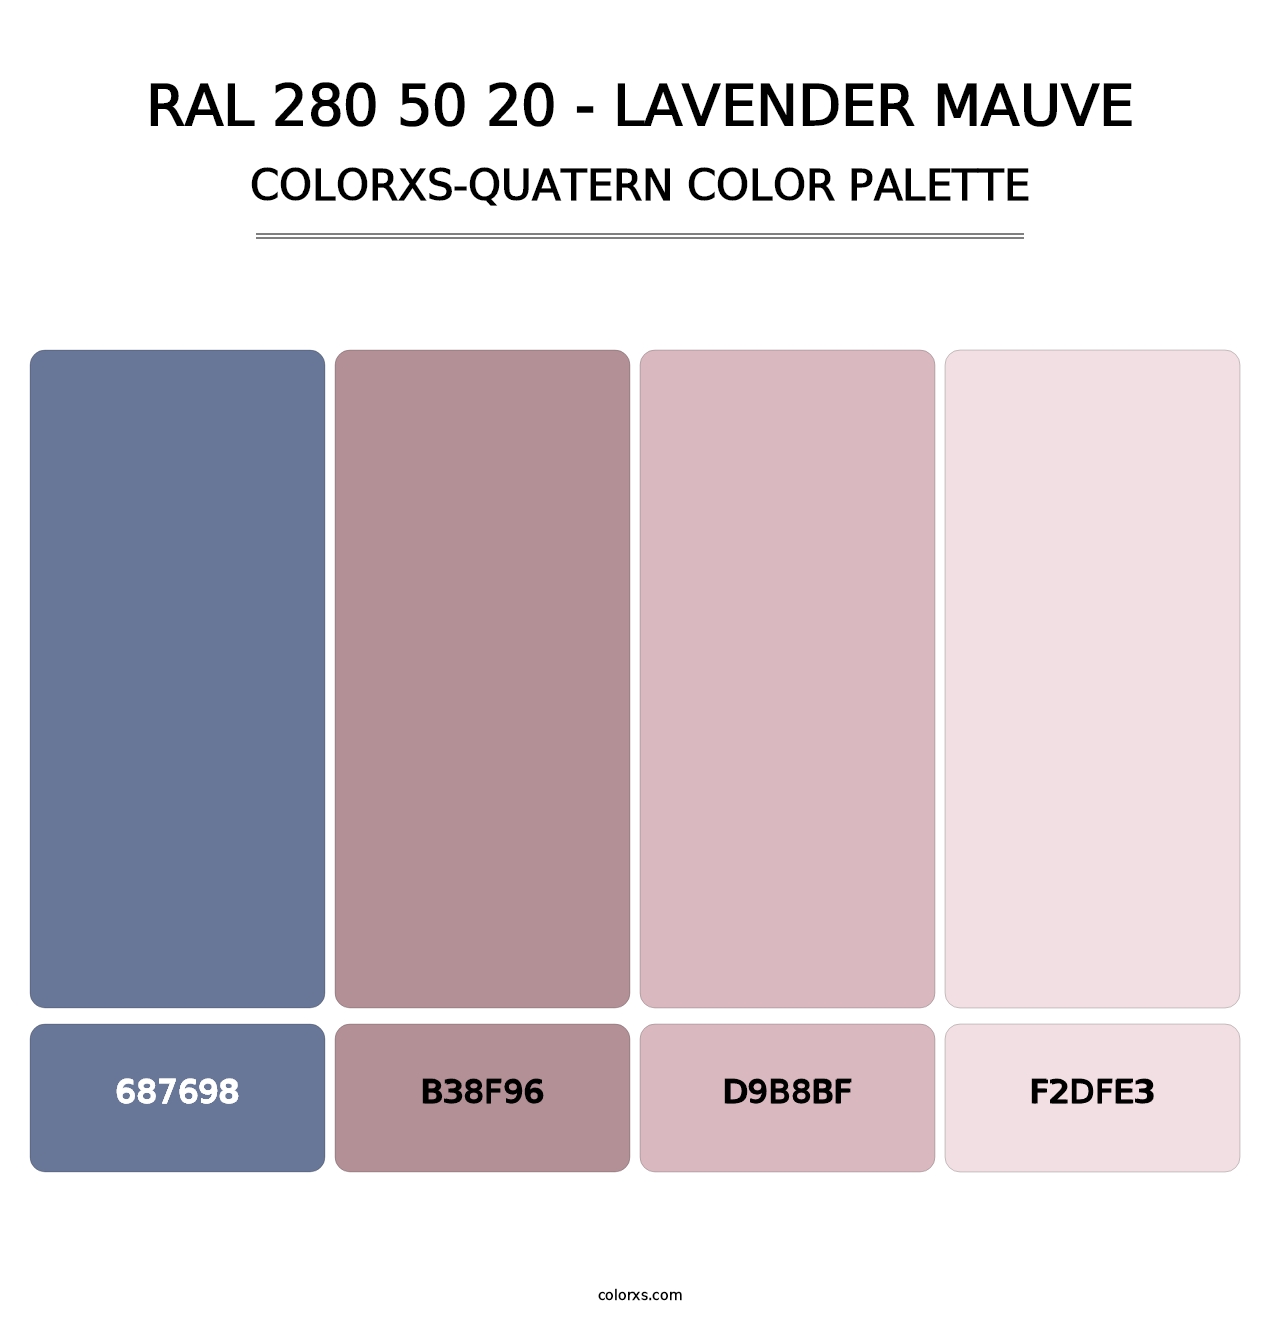 RAL 280 50 20 - Lavender Mauve - Colorxs Quatern Palette